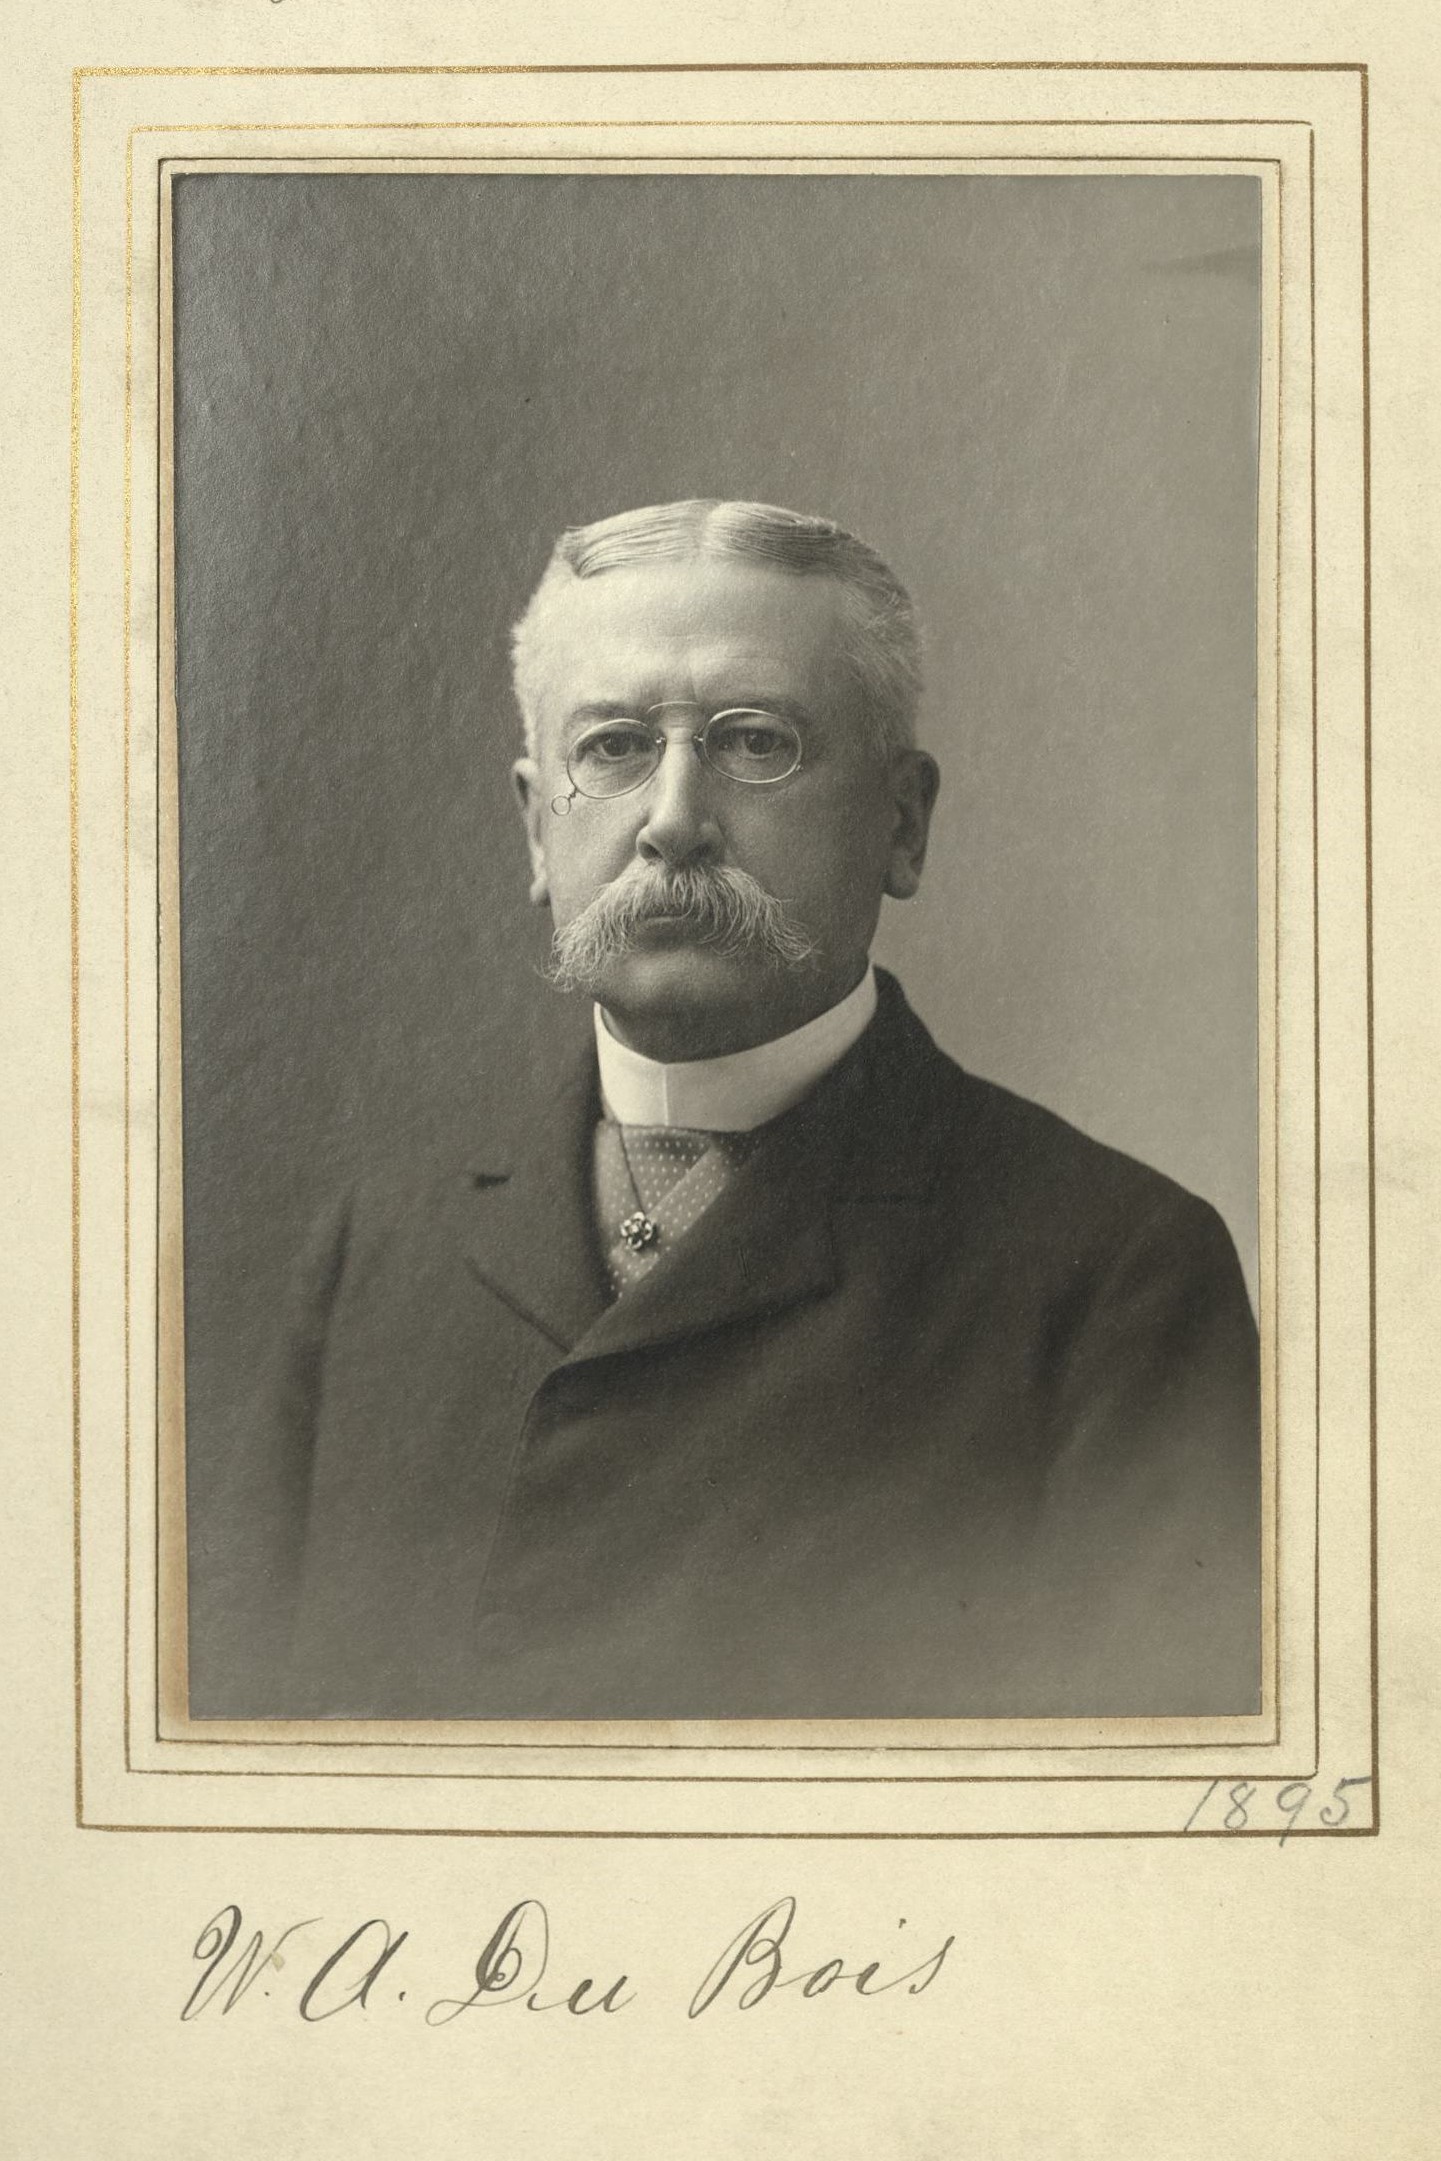 Member portrait of William A. Du Bois